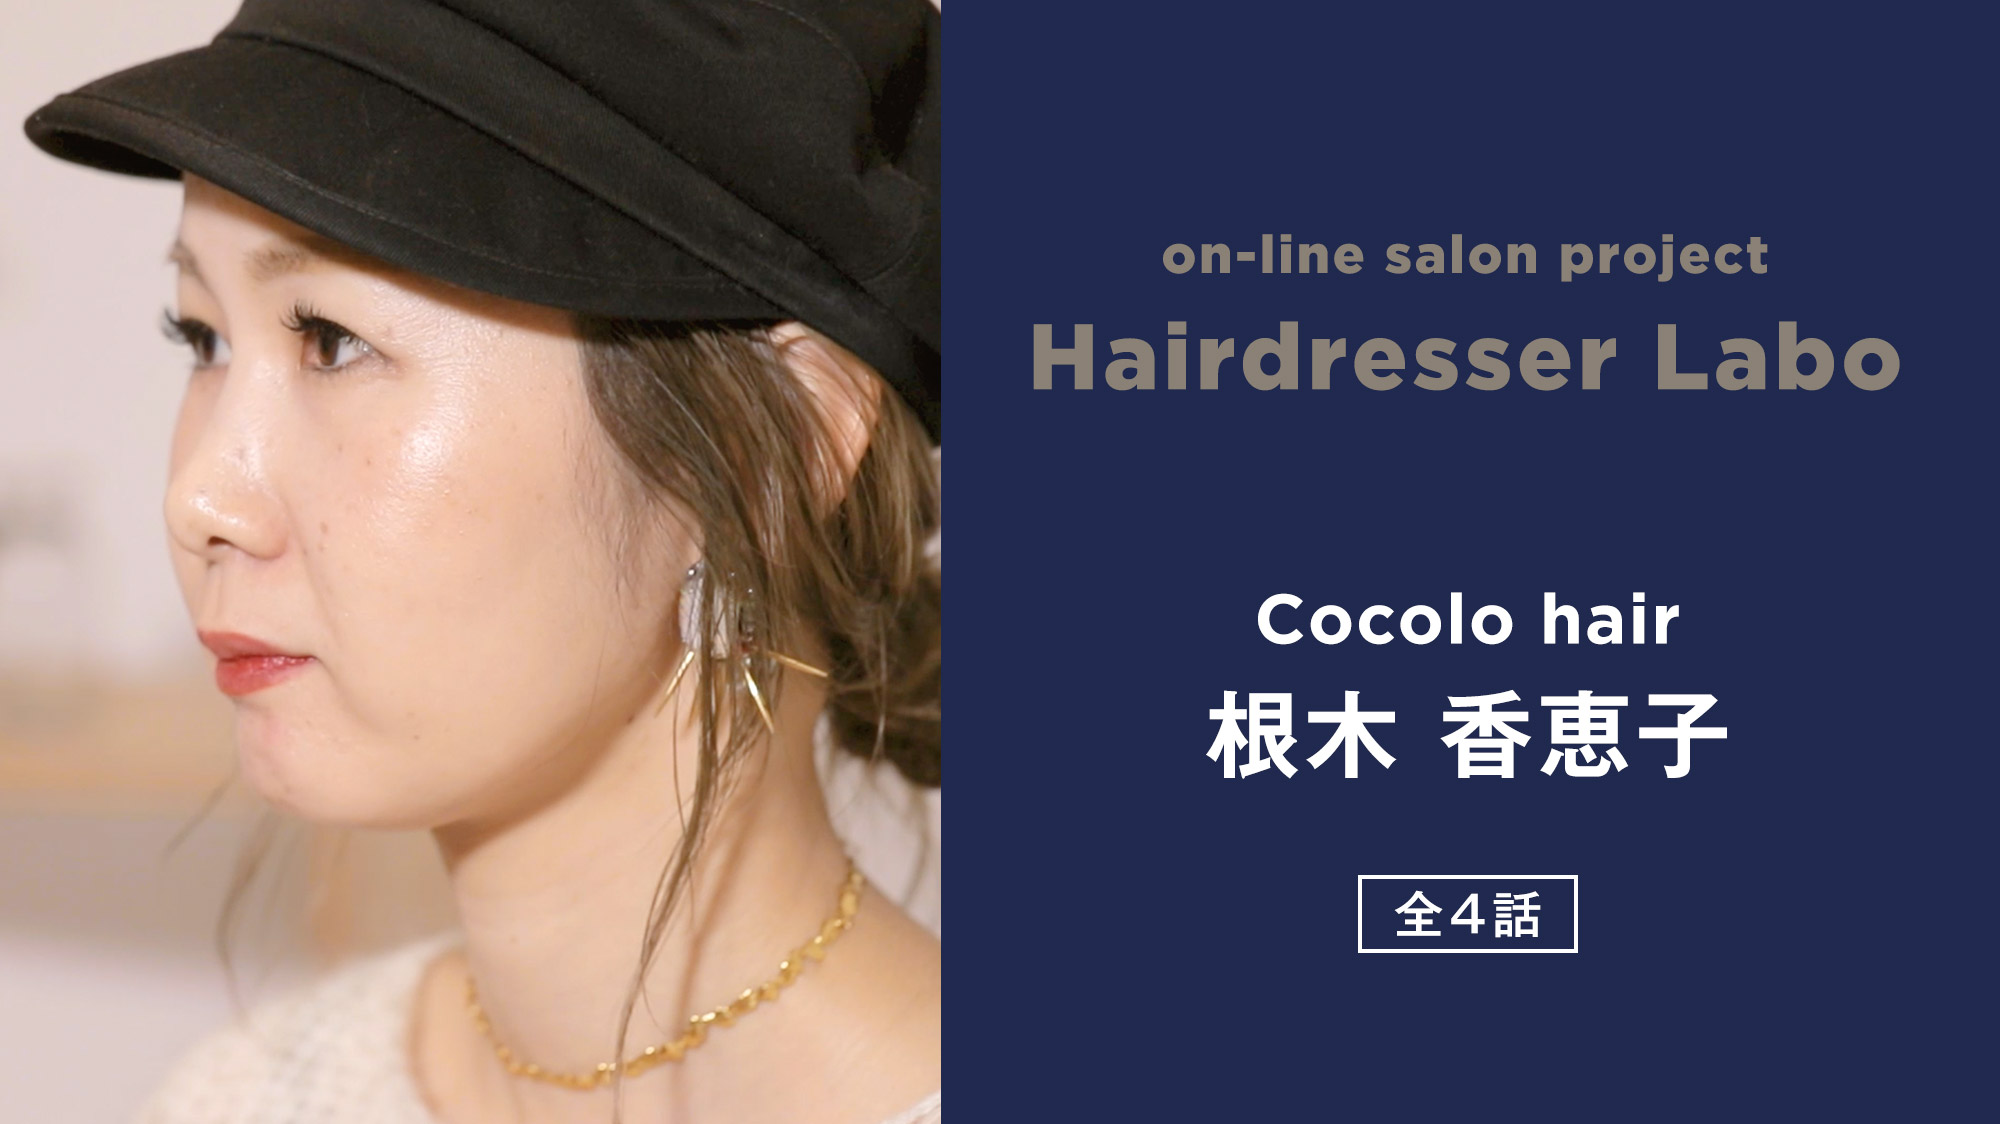 on-line salon project Hairdresser Labo『根木 香恵子』